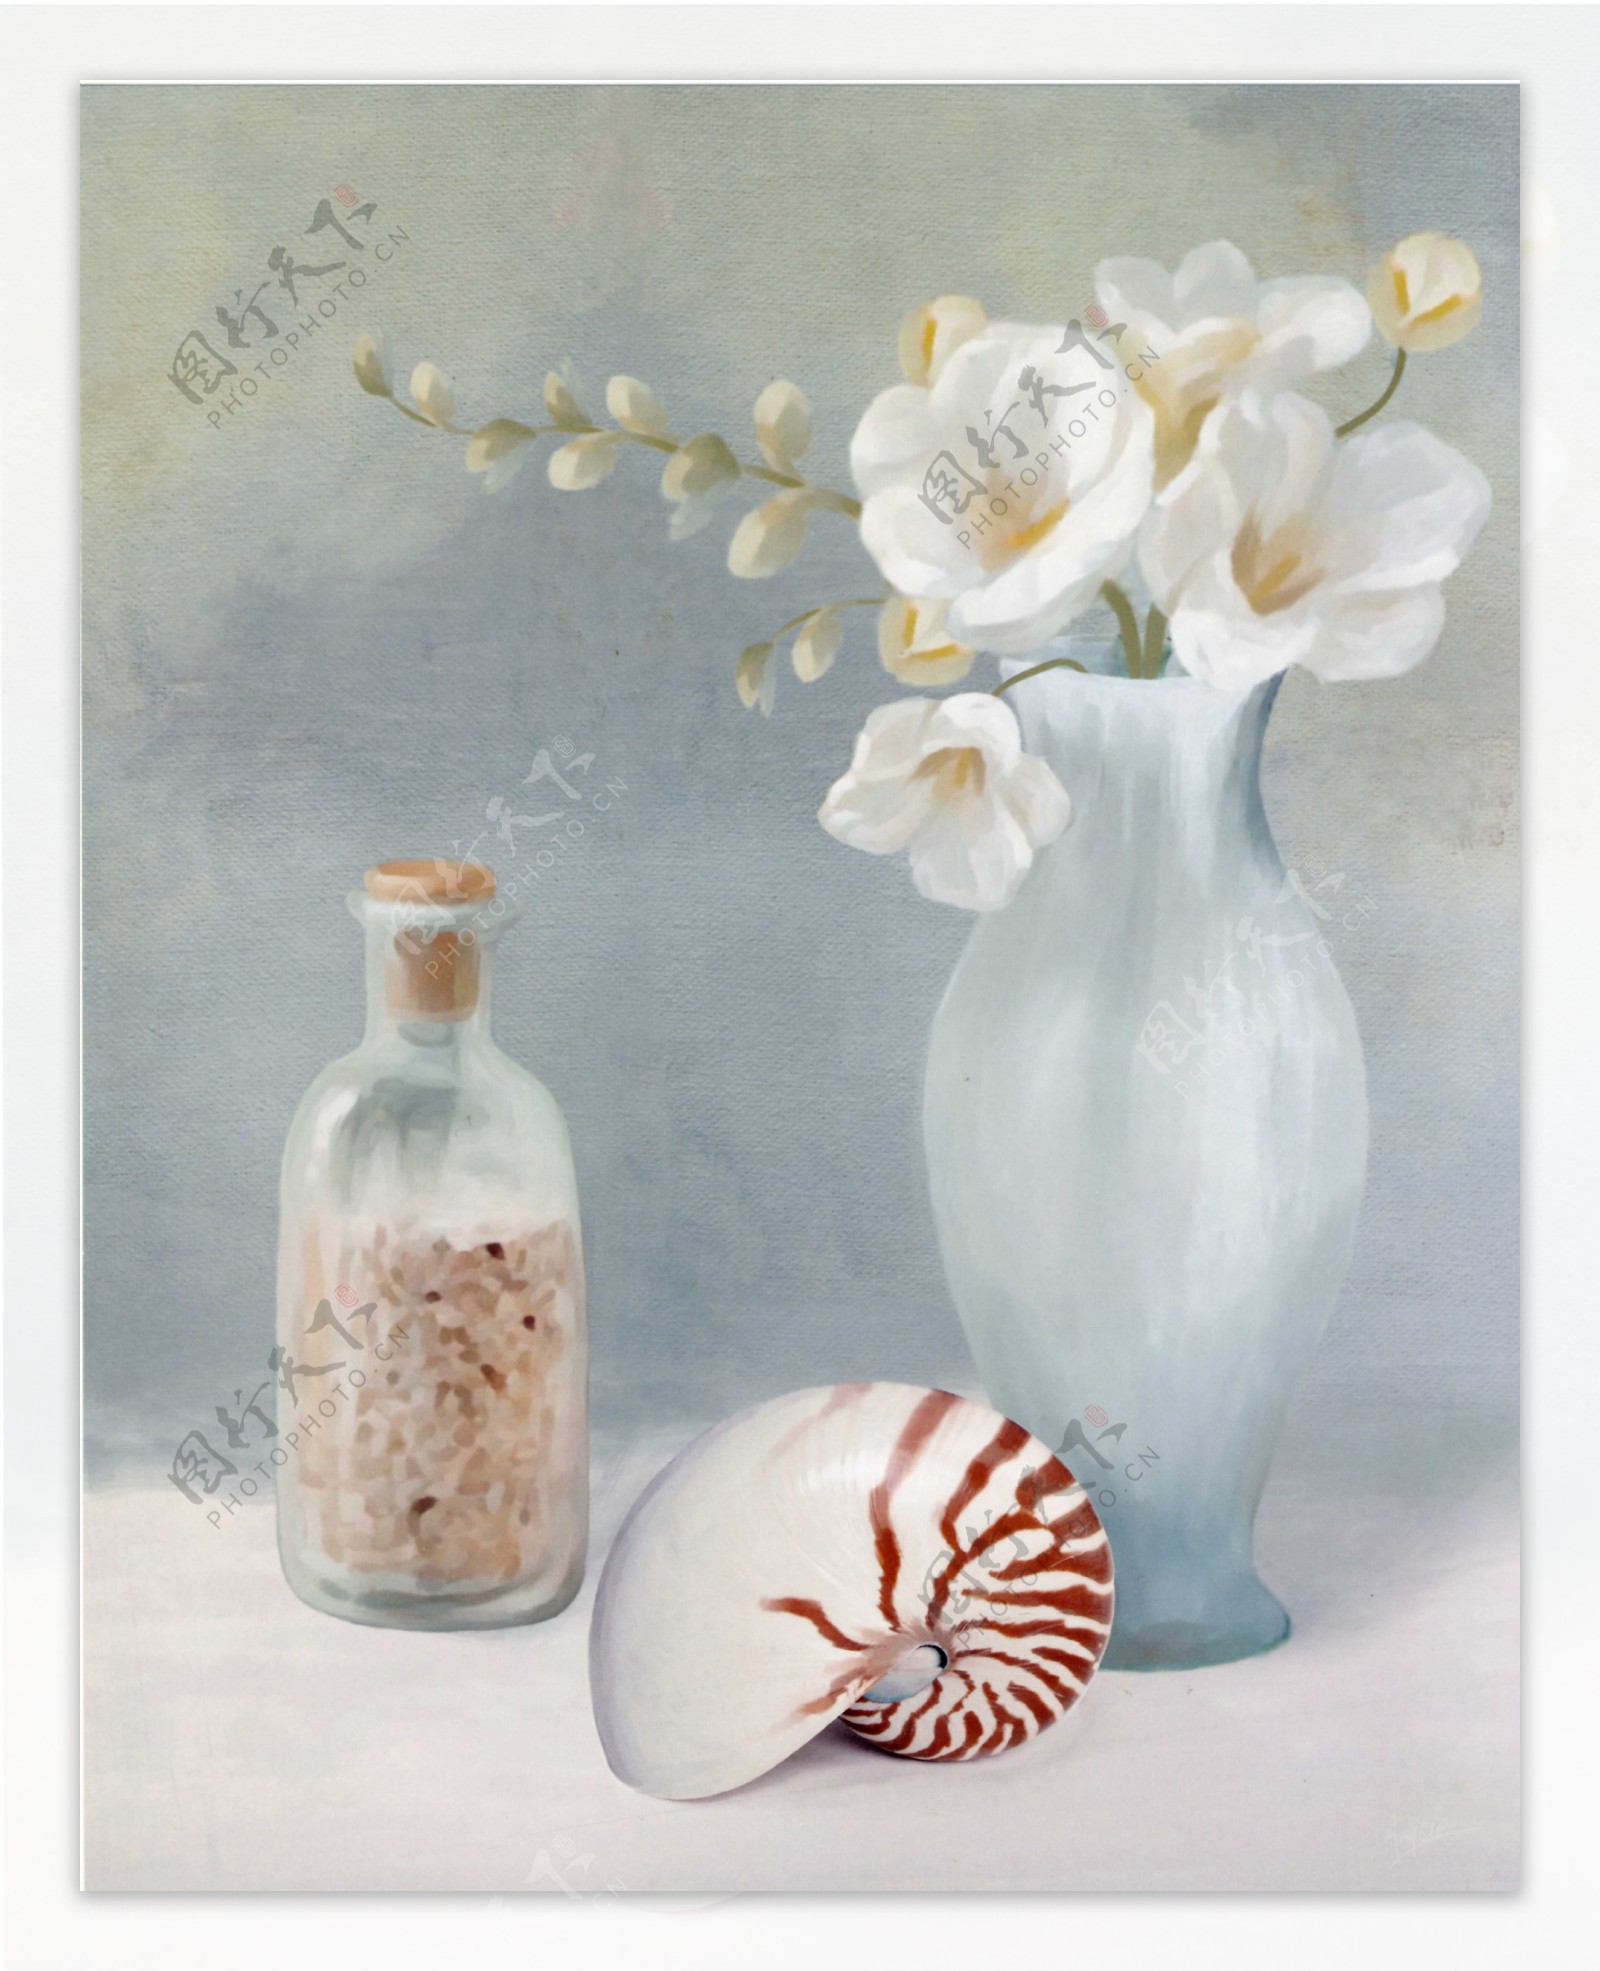 透明花瓶与海螺